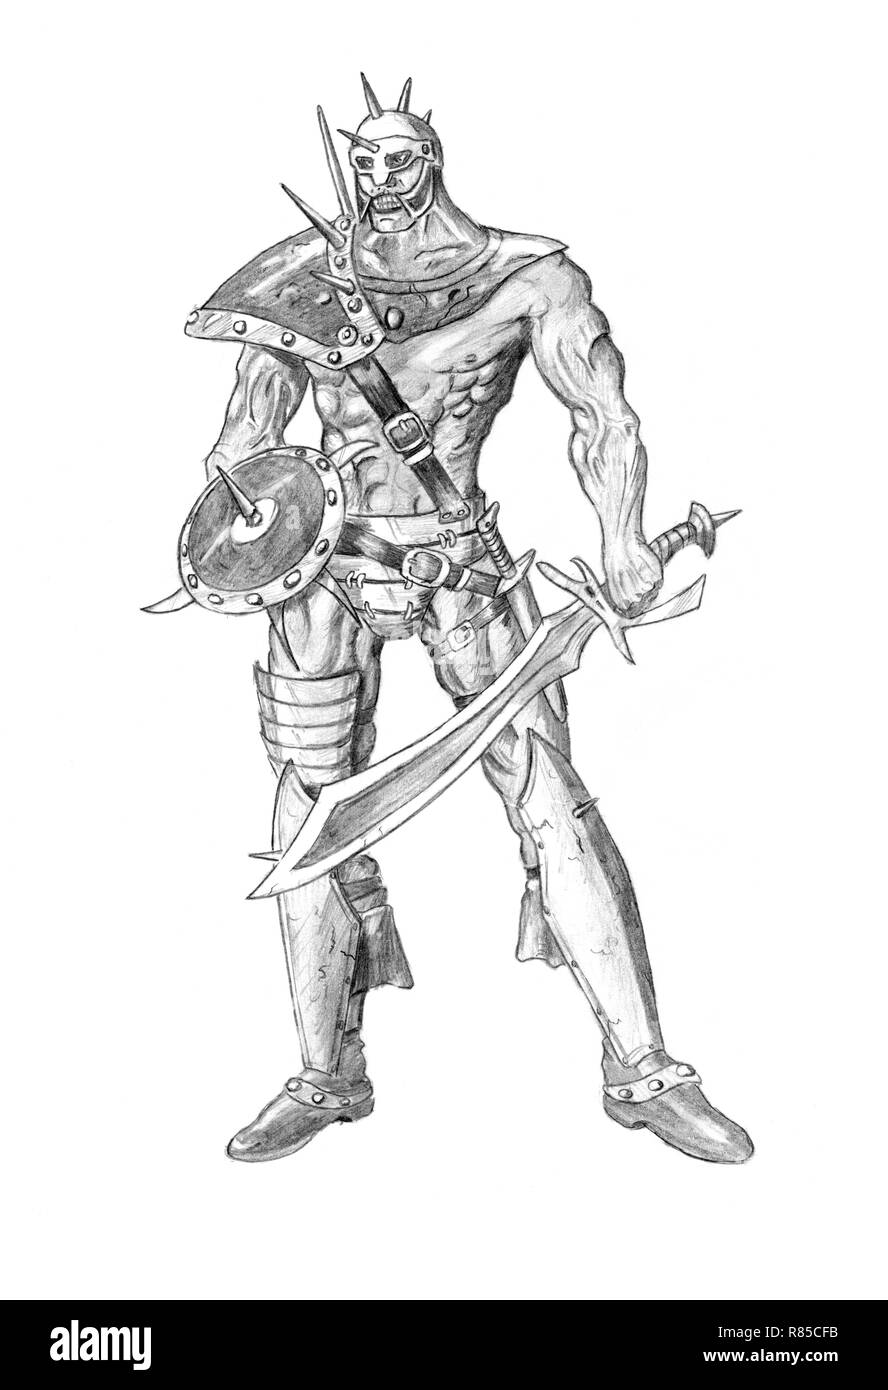 Ninja warrior sketch Royalty Free Vector Image